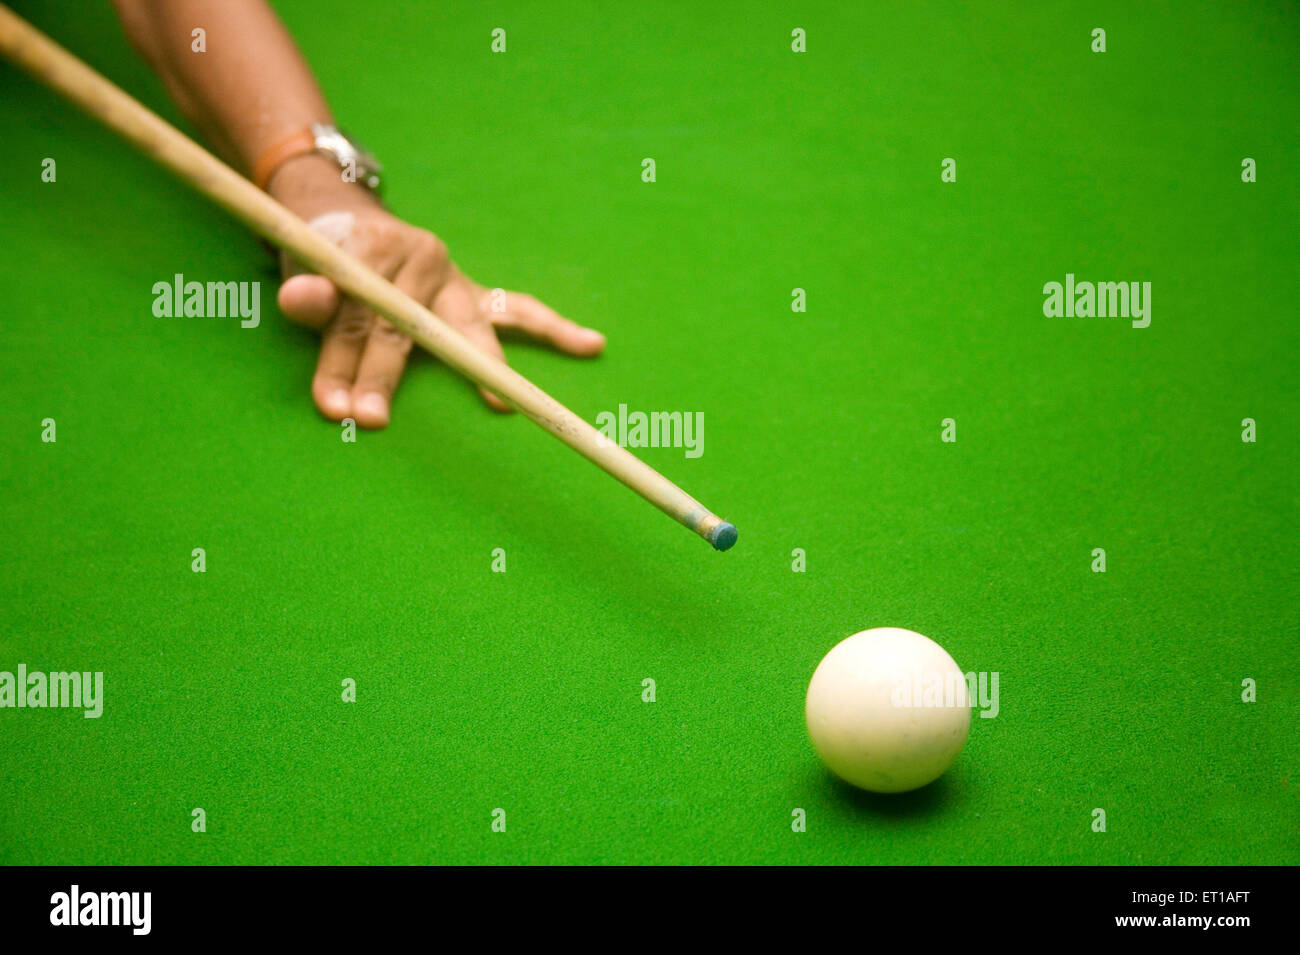 La main avec billiard stick prêt à pousser la boule blanche sur la table de jeu intérieure ; vert ; plage de Palolem Goa ; Inde ; Banque D'Images